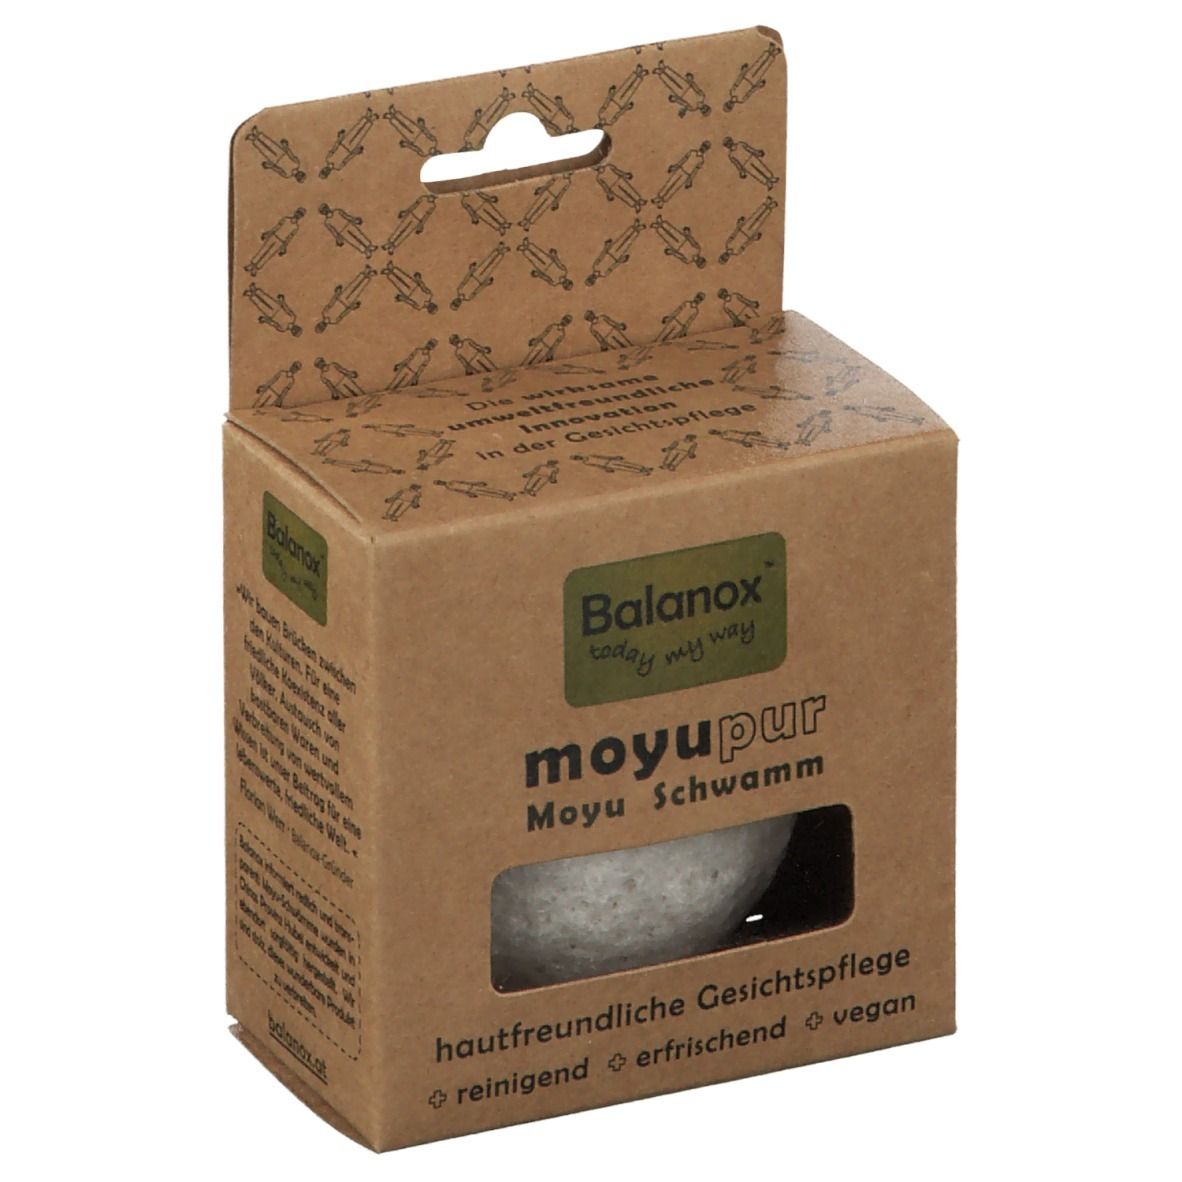 Balanox™ moyupur